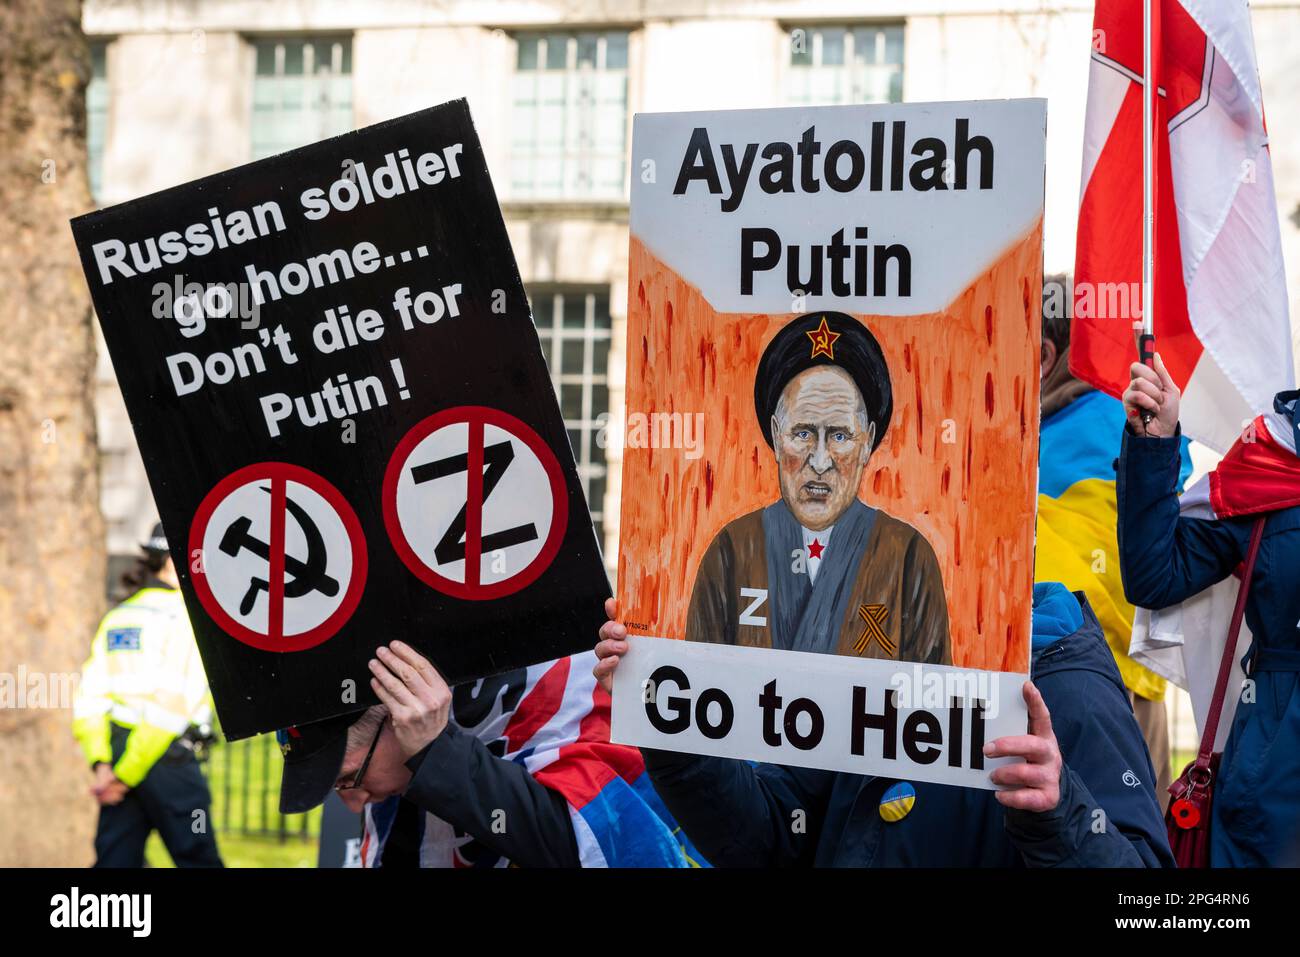 Ukrainischer Kriegsprotest gegen Wladimir Putin. Demonstranten mit Plakat mit Putin als Ayatollah Putin, fahr zur Hölle. Russischer Soldat, geh nach Hause Stockfoto